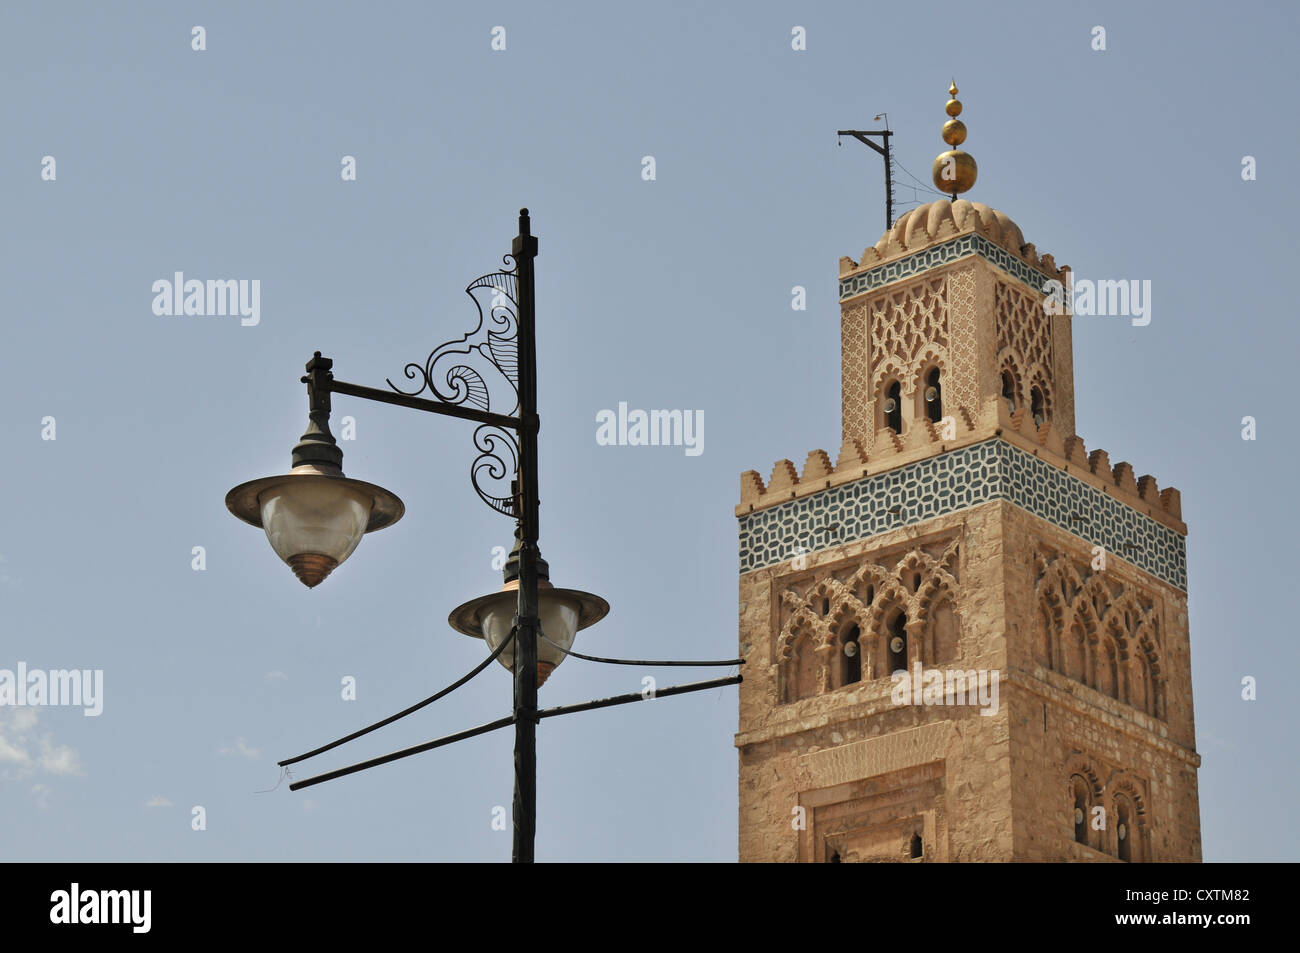 The Koutoubia Mosque, old Medina quarter, Marrakech, Morocco Stock Photo